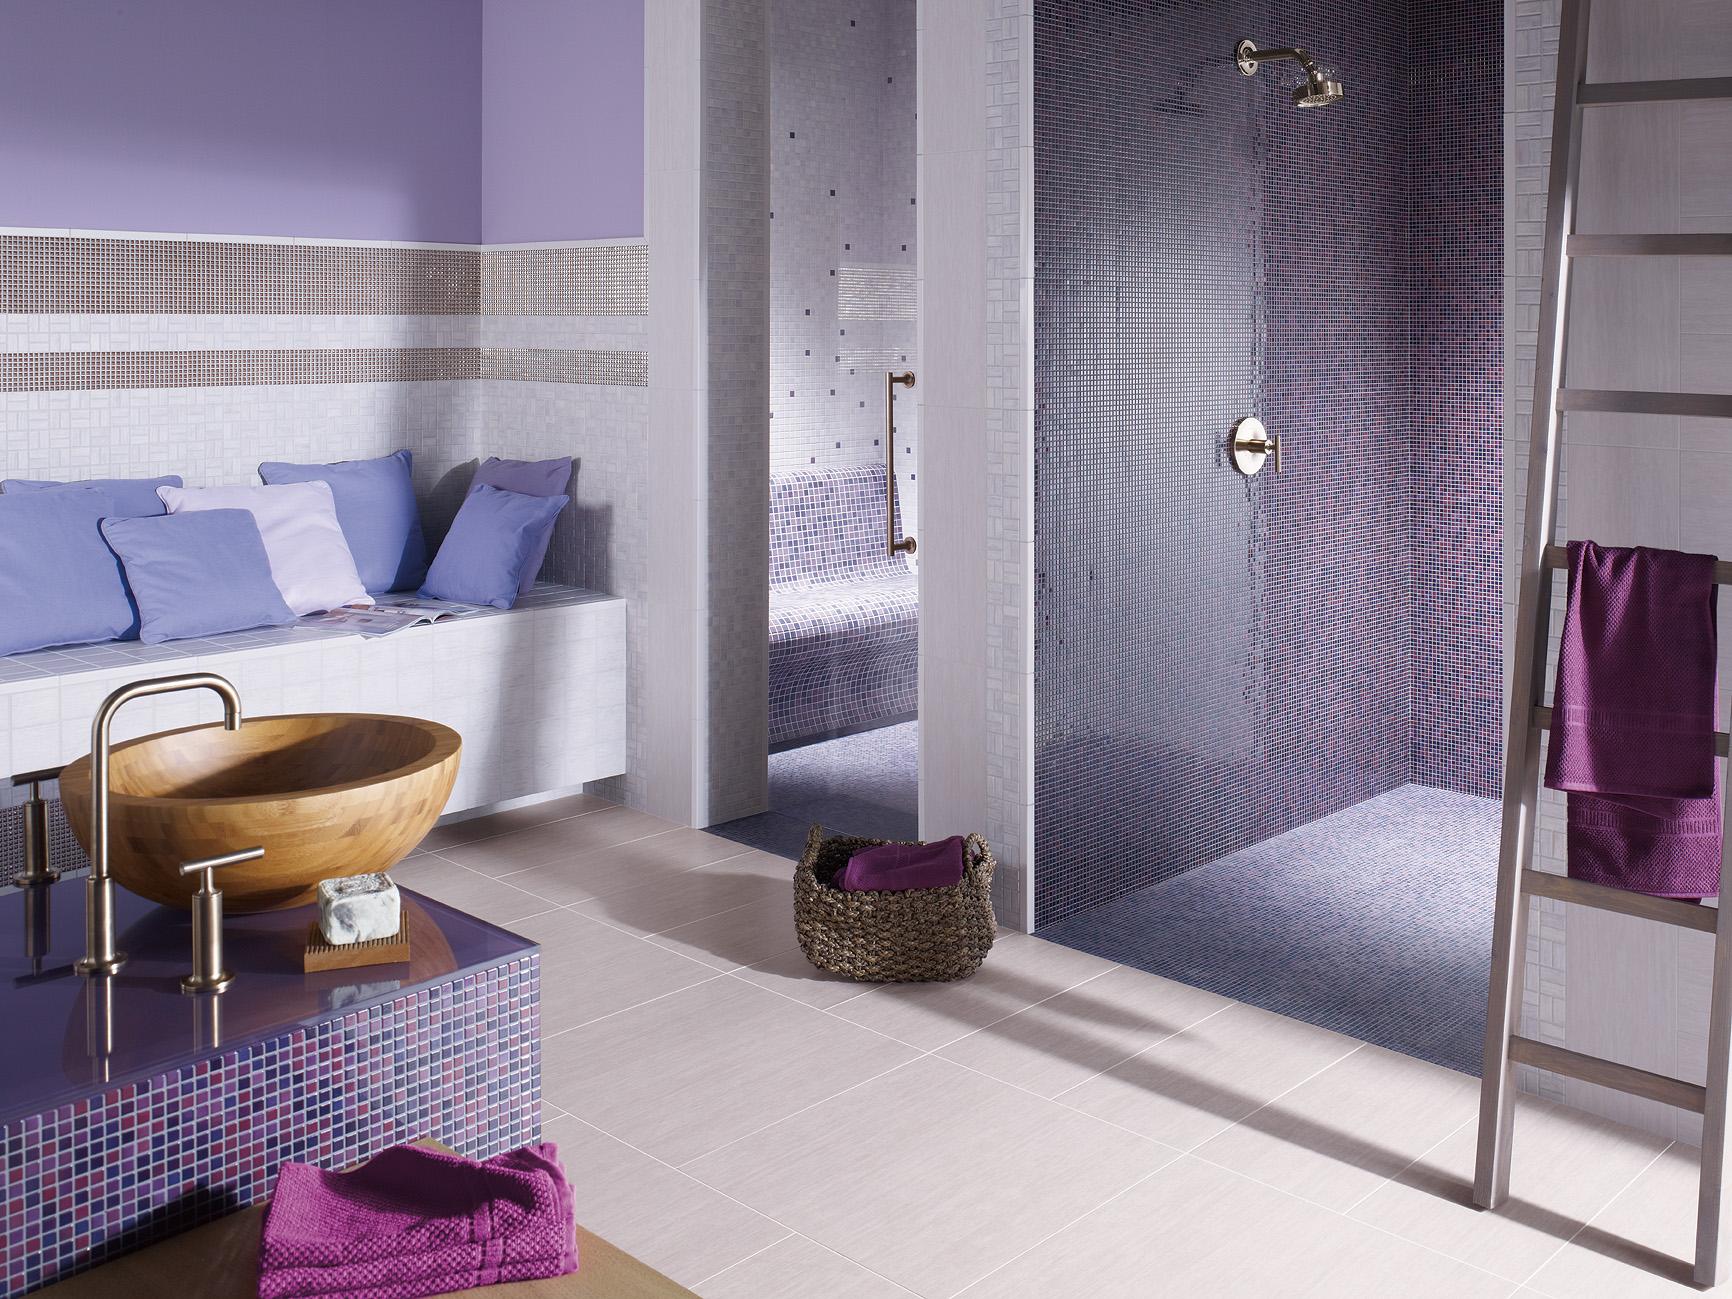 Badezimmer in Lavendel und Lila #fliesen #mosaikfliesen #dusche #waschbecken #holzwaschbecken ©Jasba Mosaik GmbH